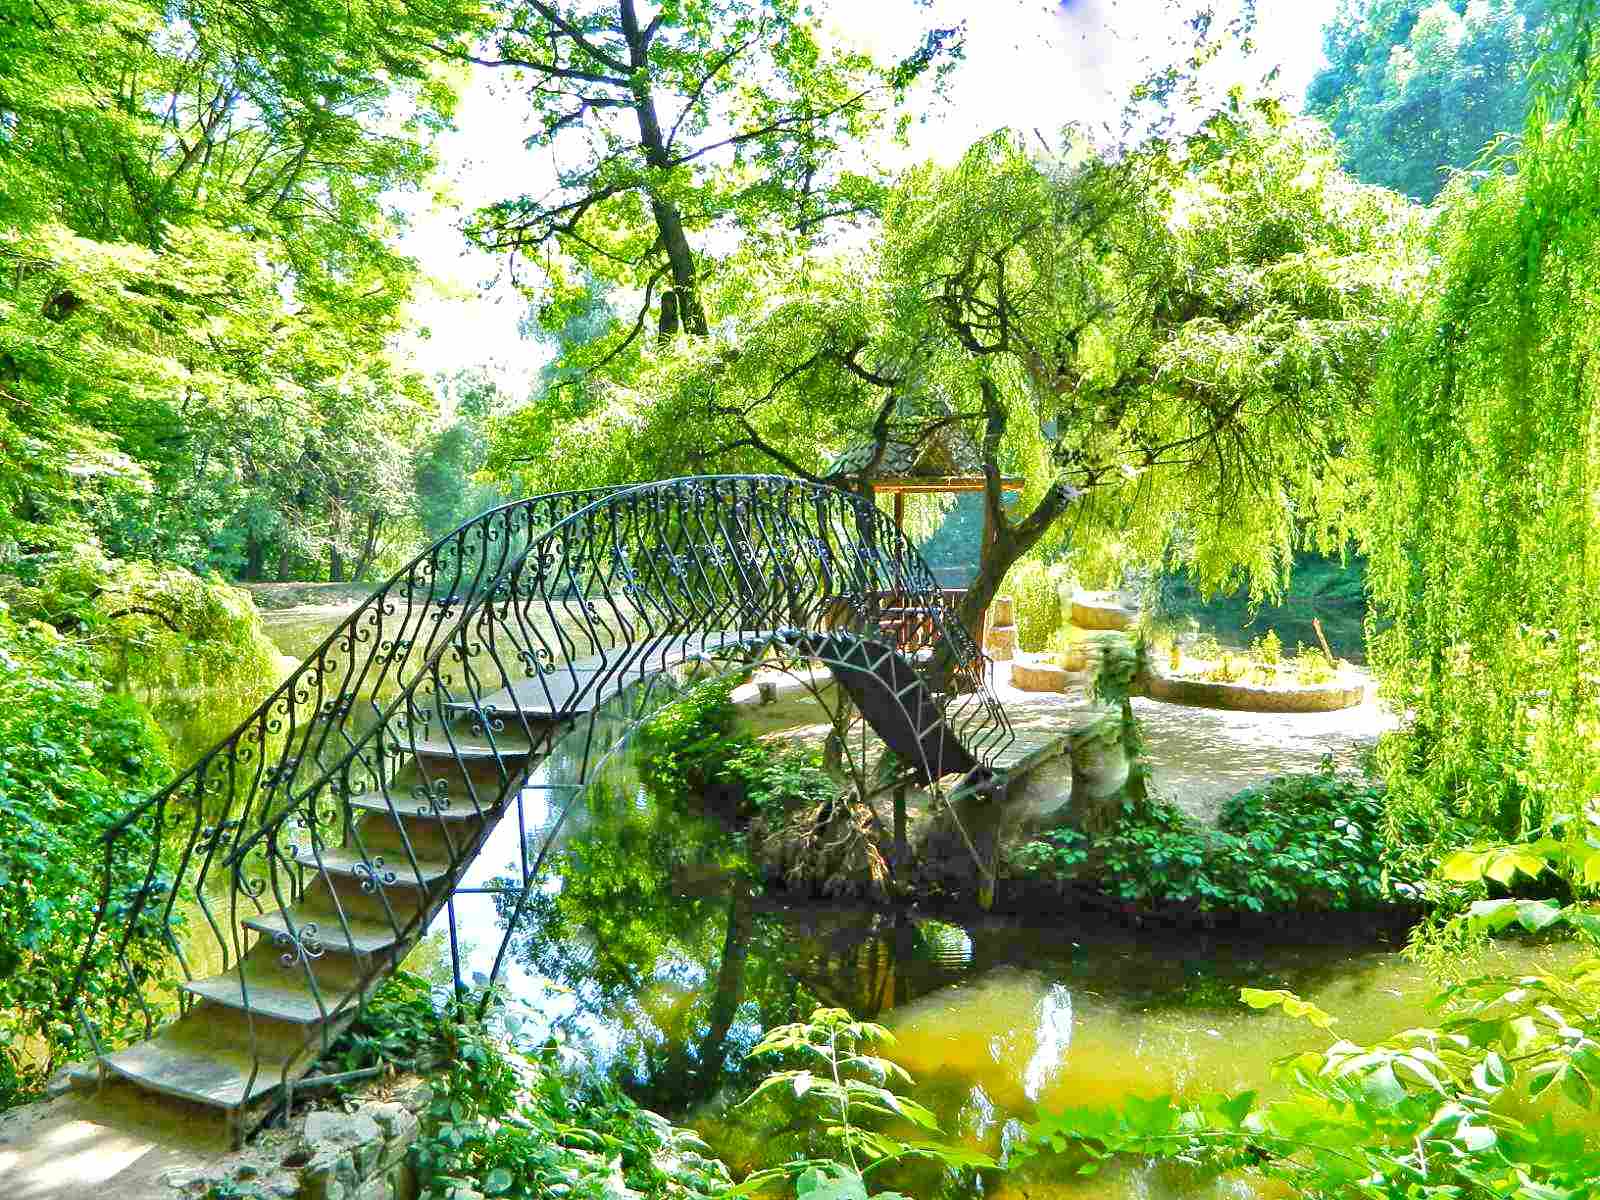 The Krasnokutsk Arboretum Park